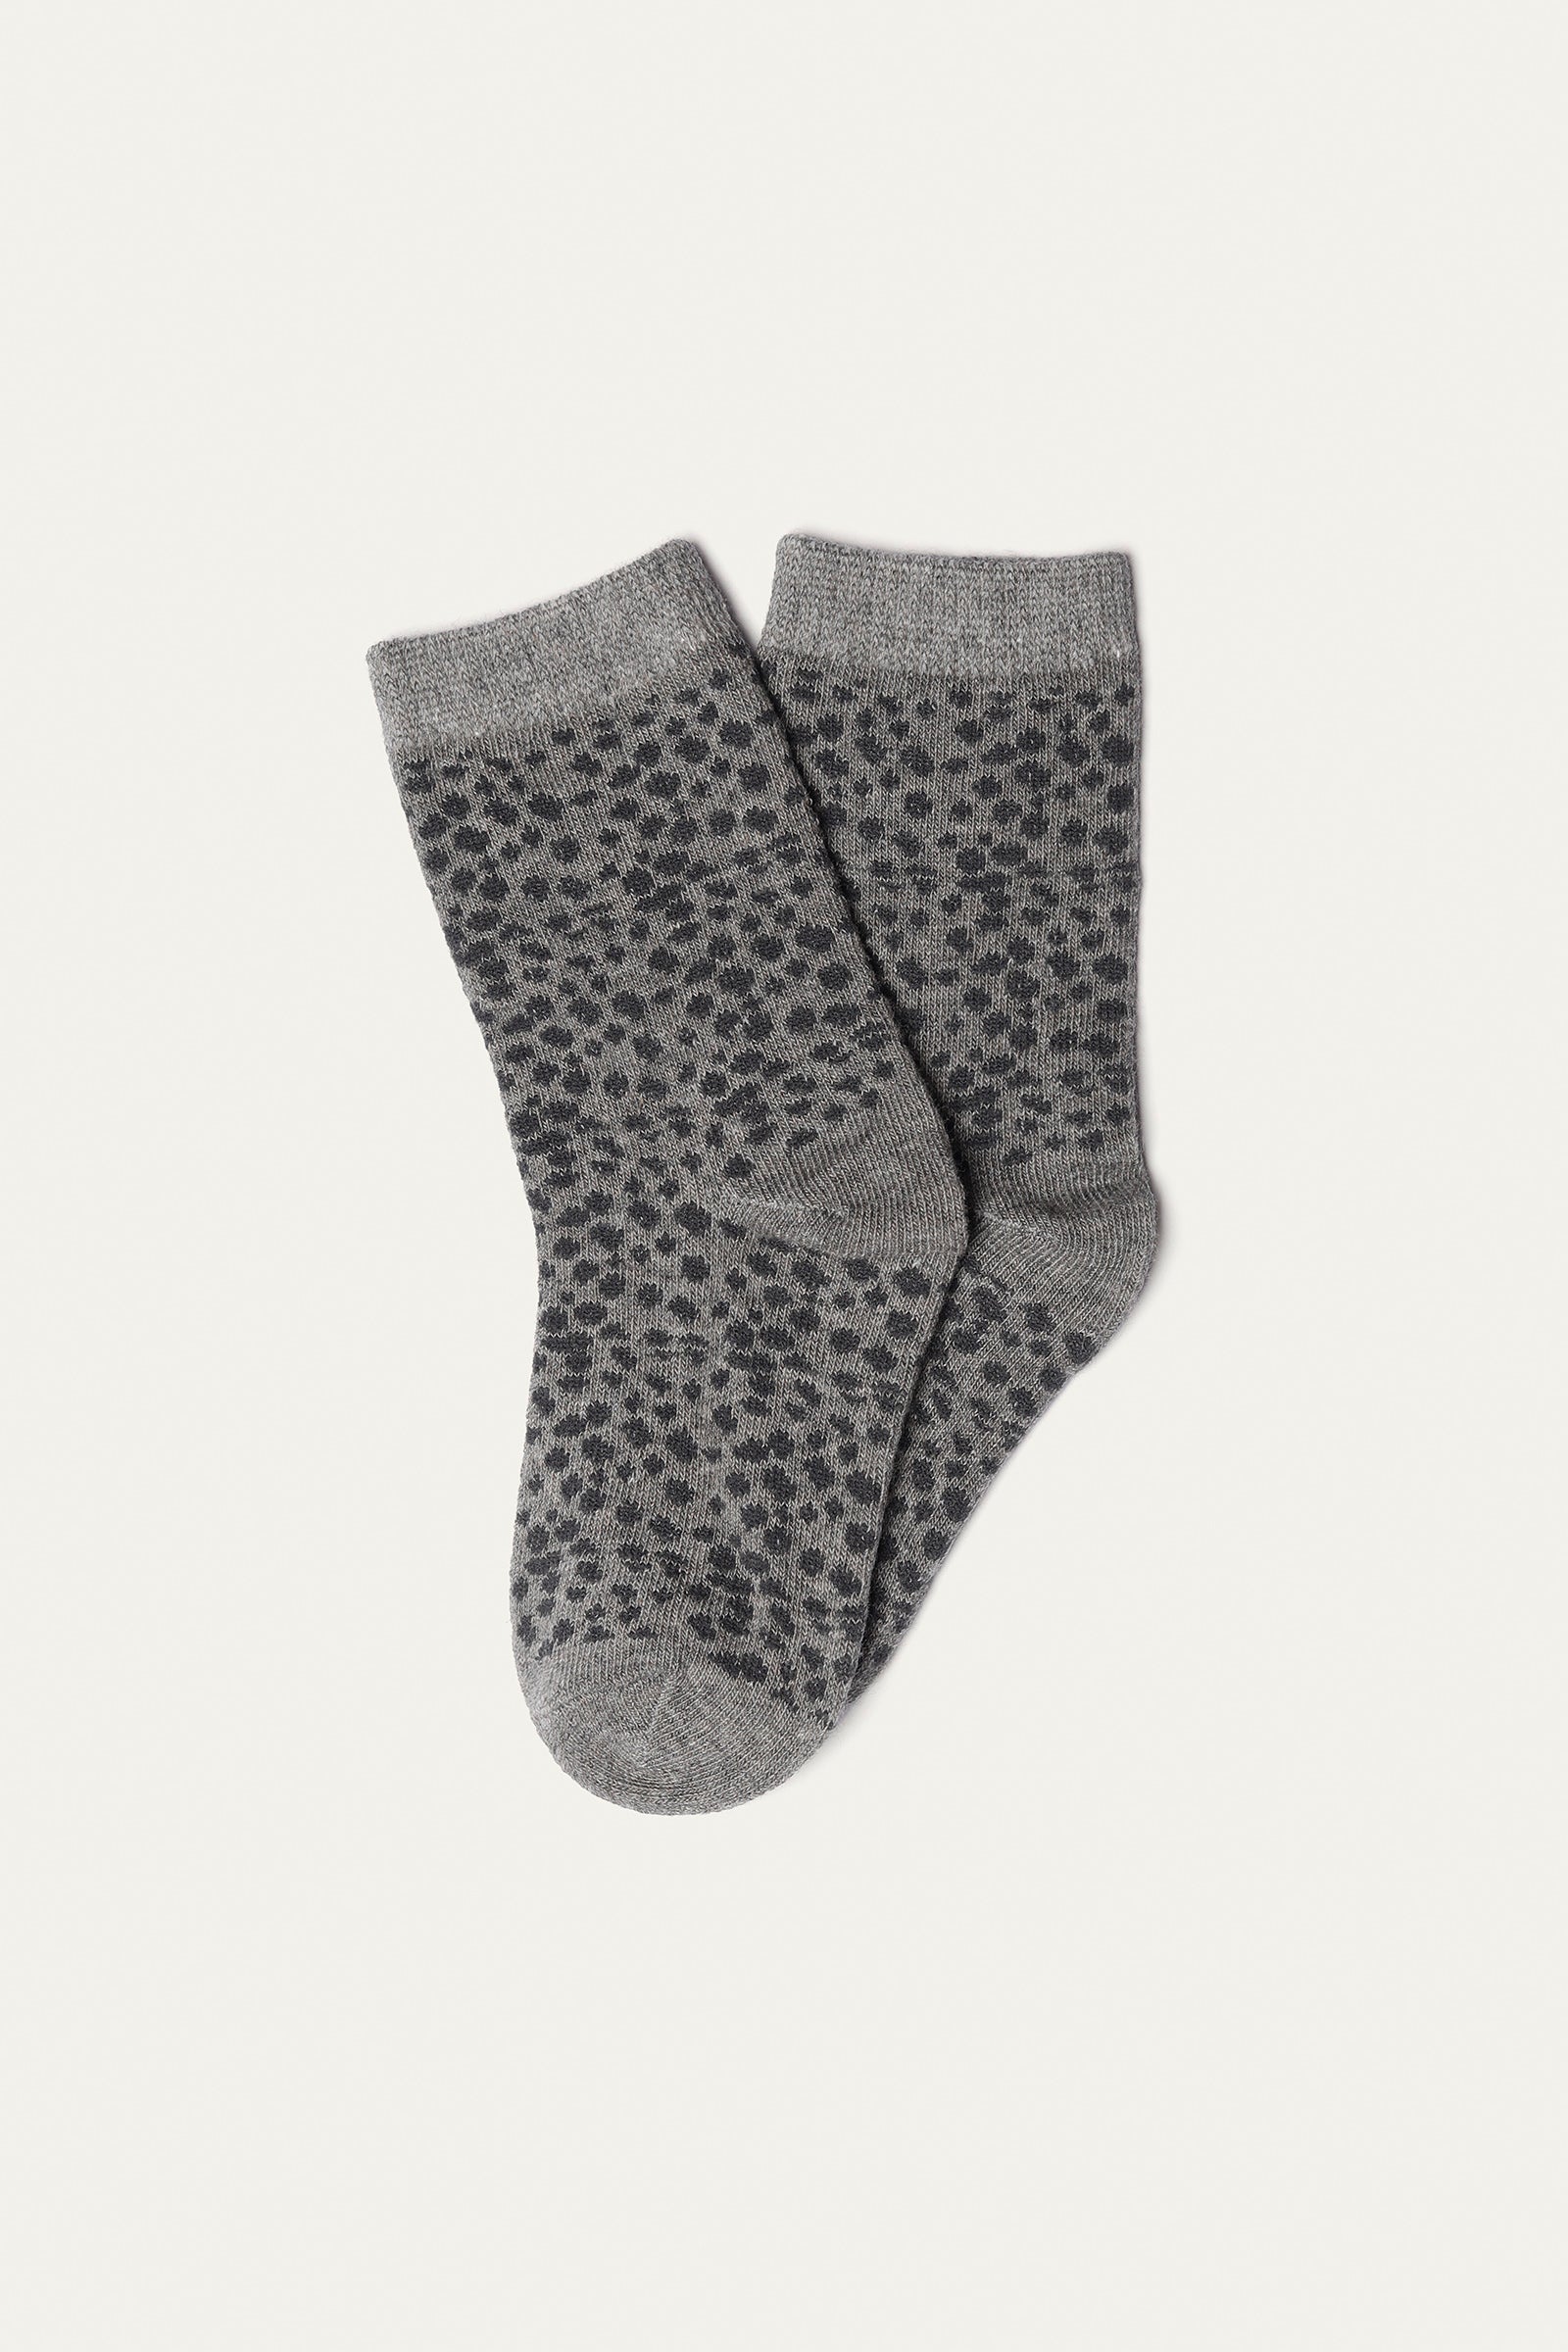 Socks (pack of 5) (GS-156R)